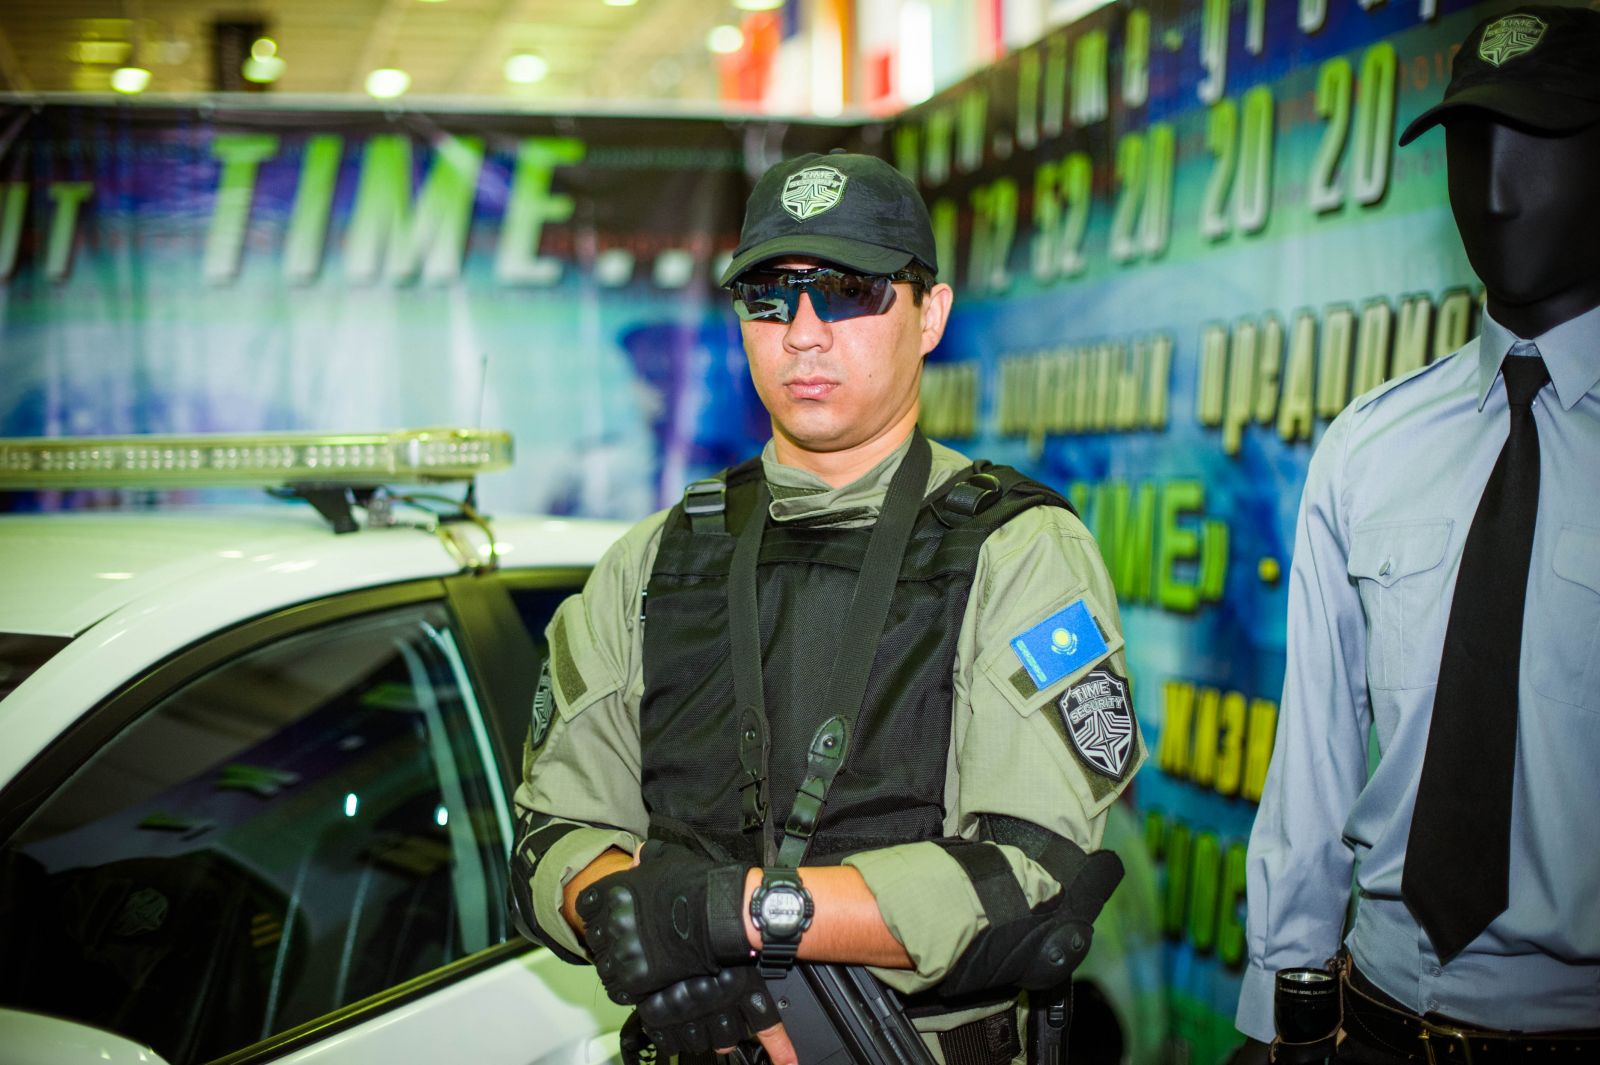 II МЕЖДУНАРОДНАЯ ВЫСТАВКА ПО БЕЗОПАСНОСТИ И ГРАЖДАНСКОЙ ЗАЩИТЕ KAZAKHSTAN SECURITY SYSTEMS-2015